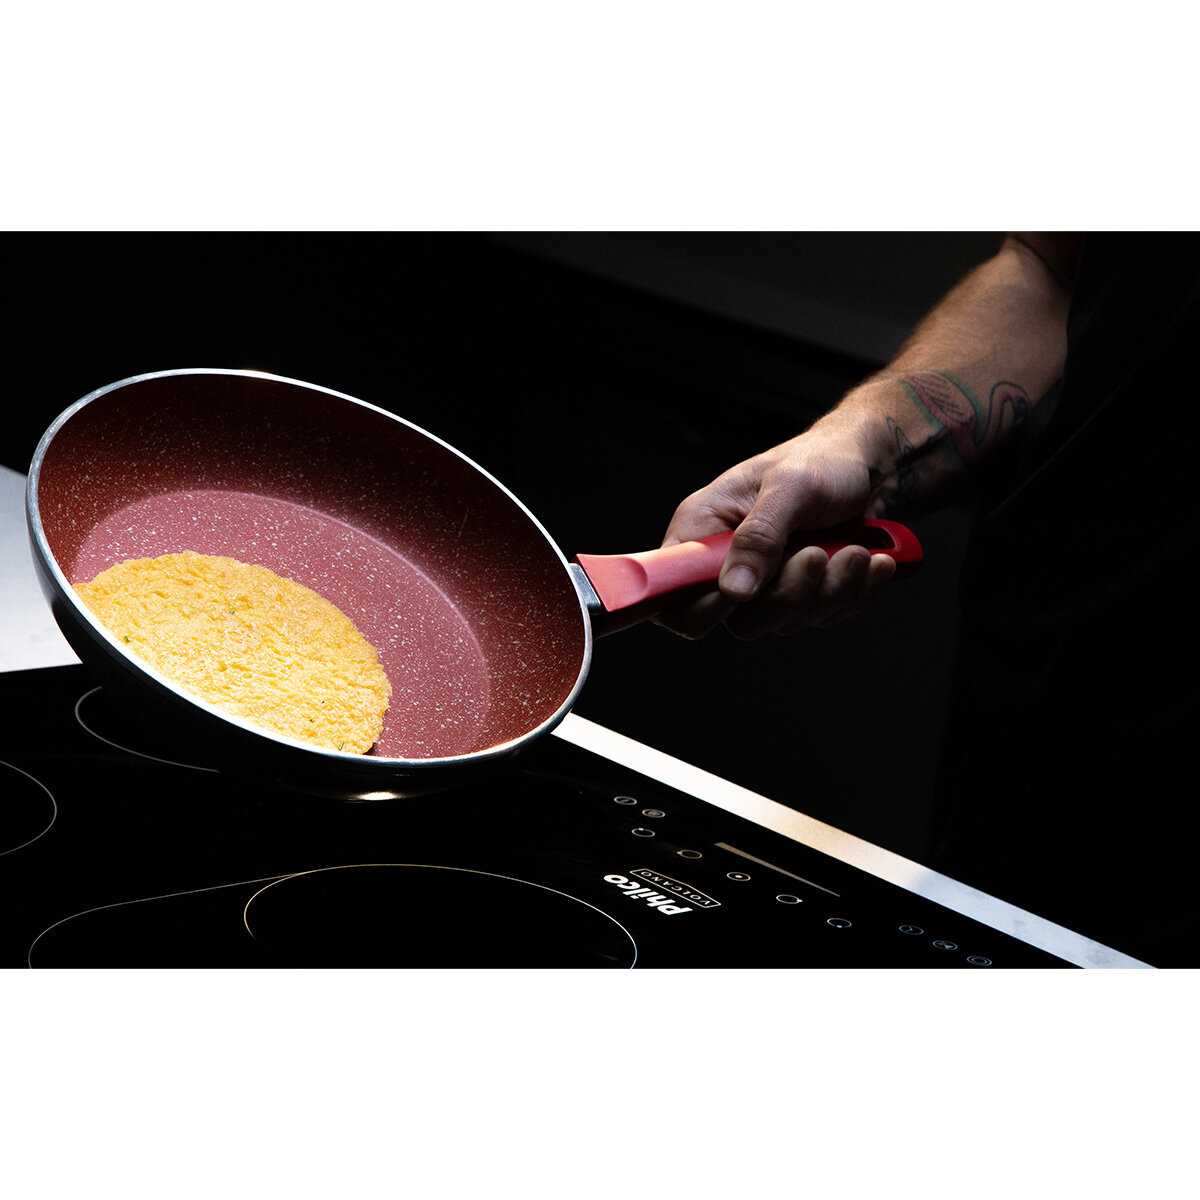 omelete com frango e ricota é receita fácil, prática e deliciosa; veja o passo a passo!